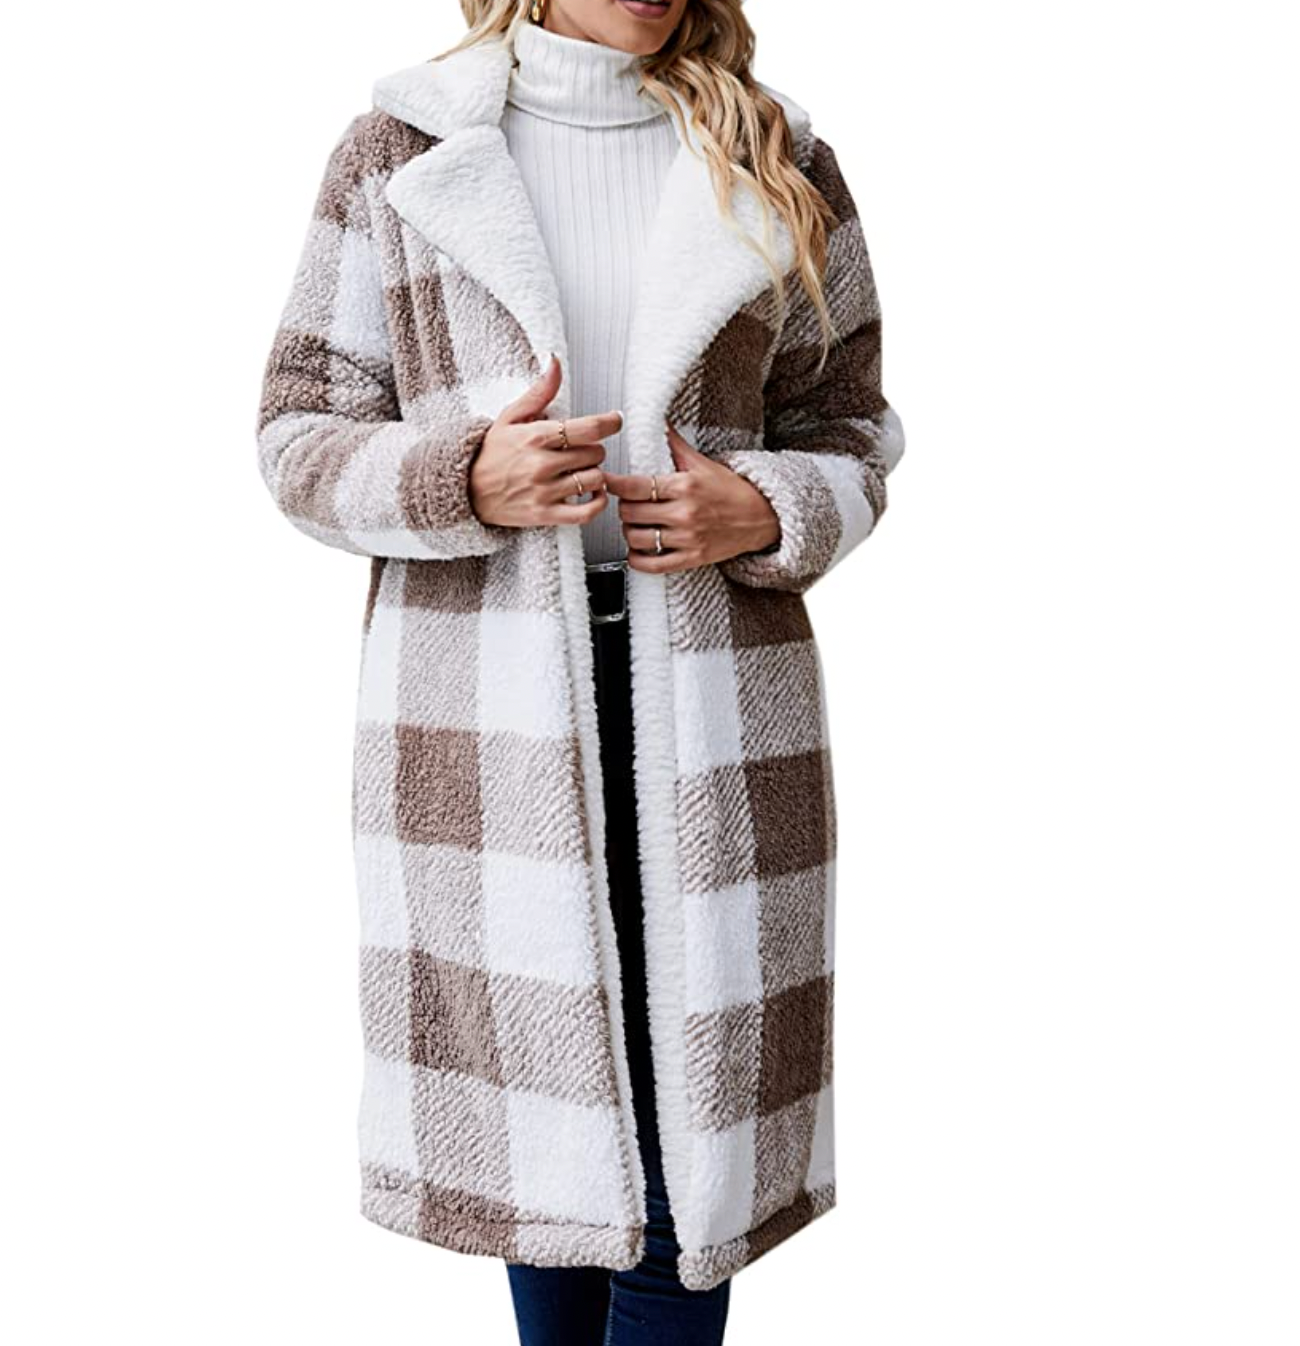 Women's Fuzzy Fleece Lapel Open Front Long Cardigan Coat Faux Fur Warm Winter Outwear Jackets